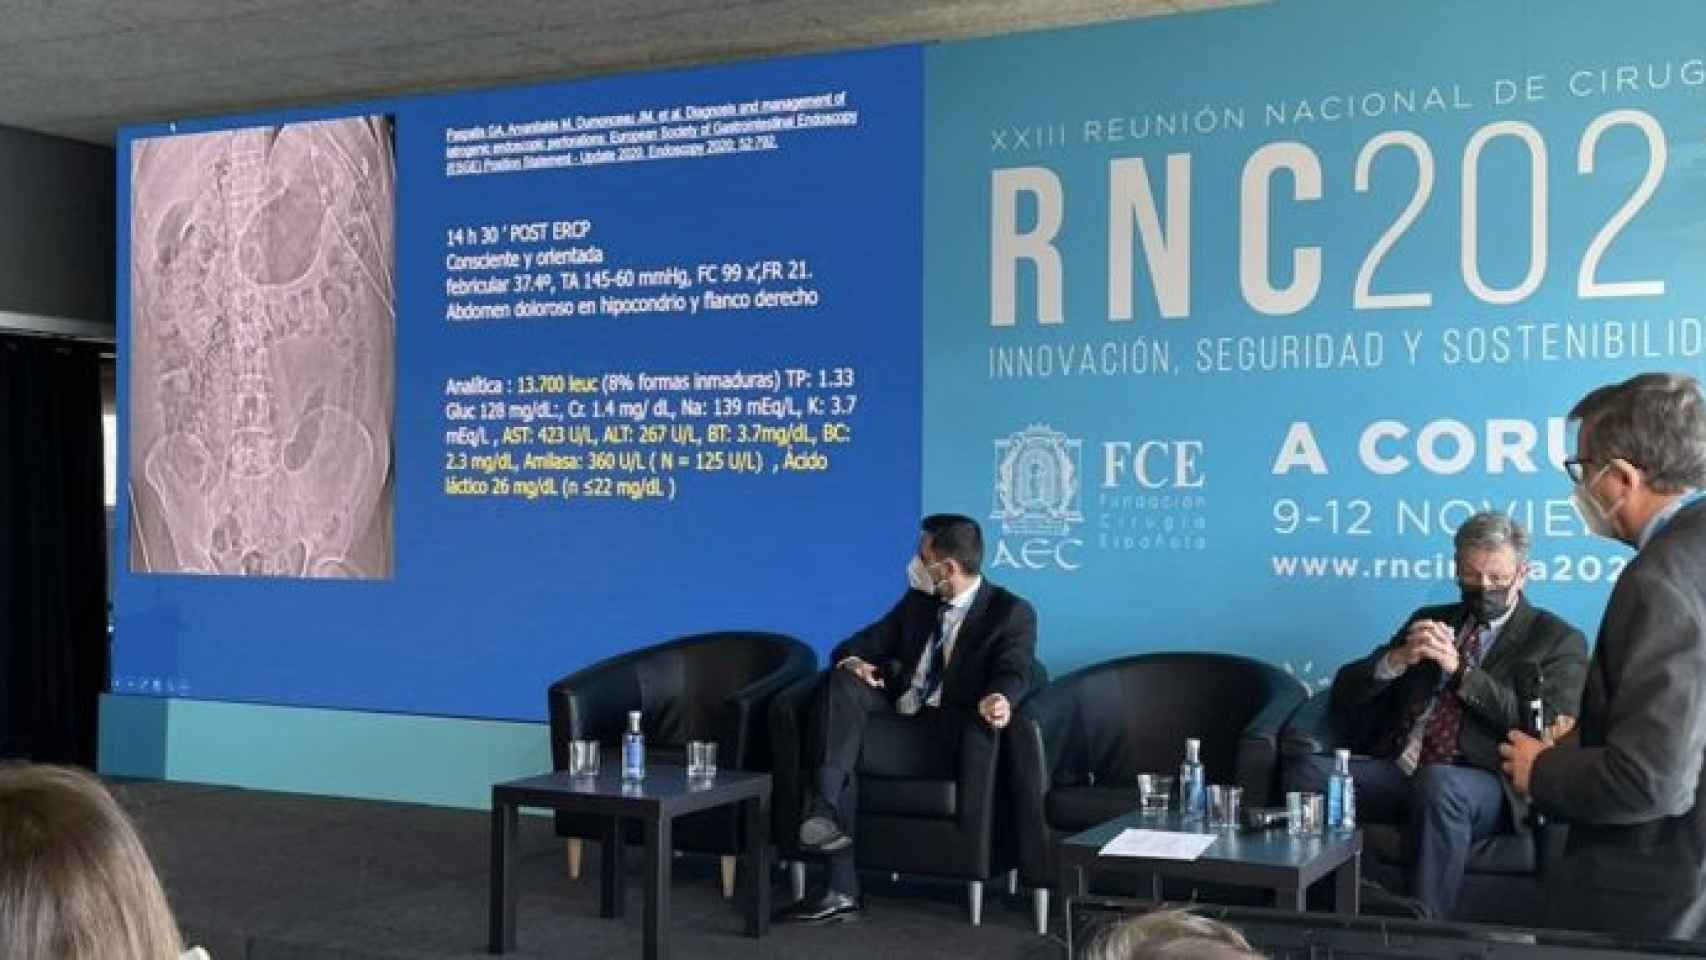 Reunión Nacional de Cirugía celebrada en 2021 en La Coruña